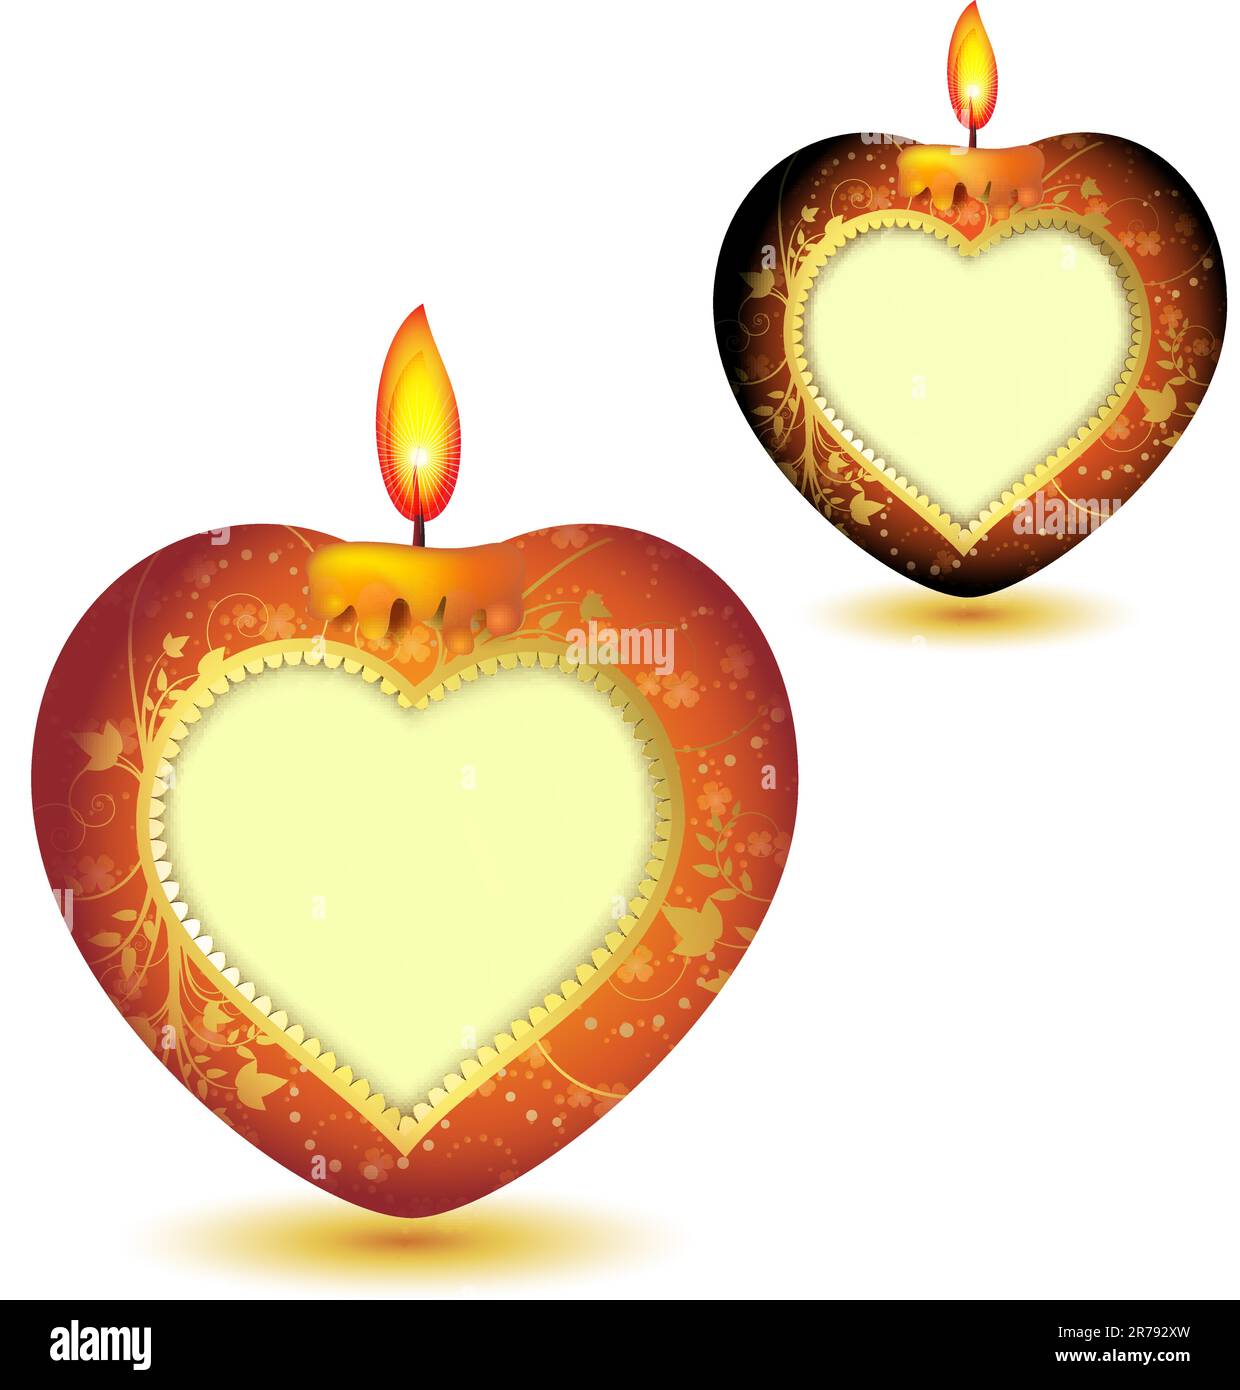 Deux élégantes bougies rouges en forme de coeur, décorations dorées et espace pour le texte de la Saint-Valentin Illustration de Vecteur